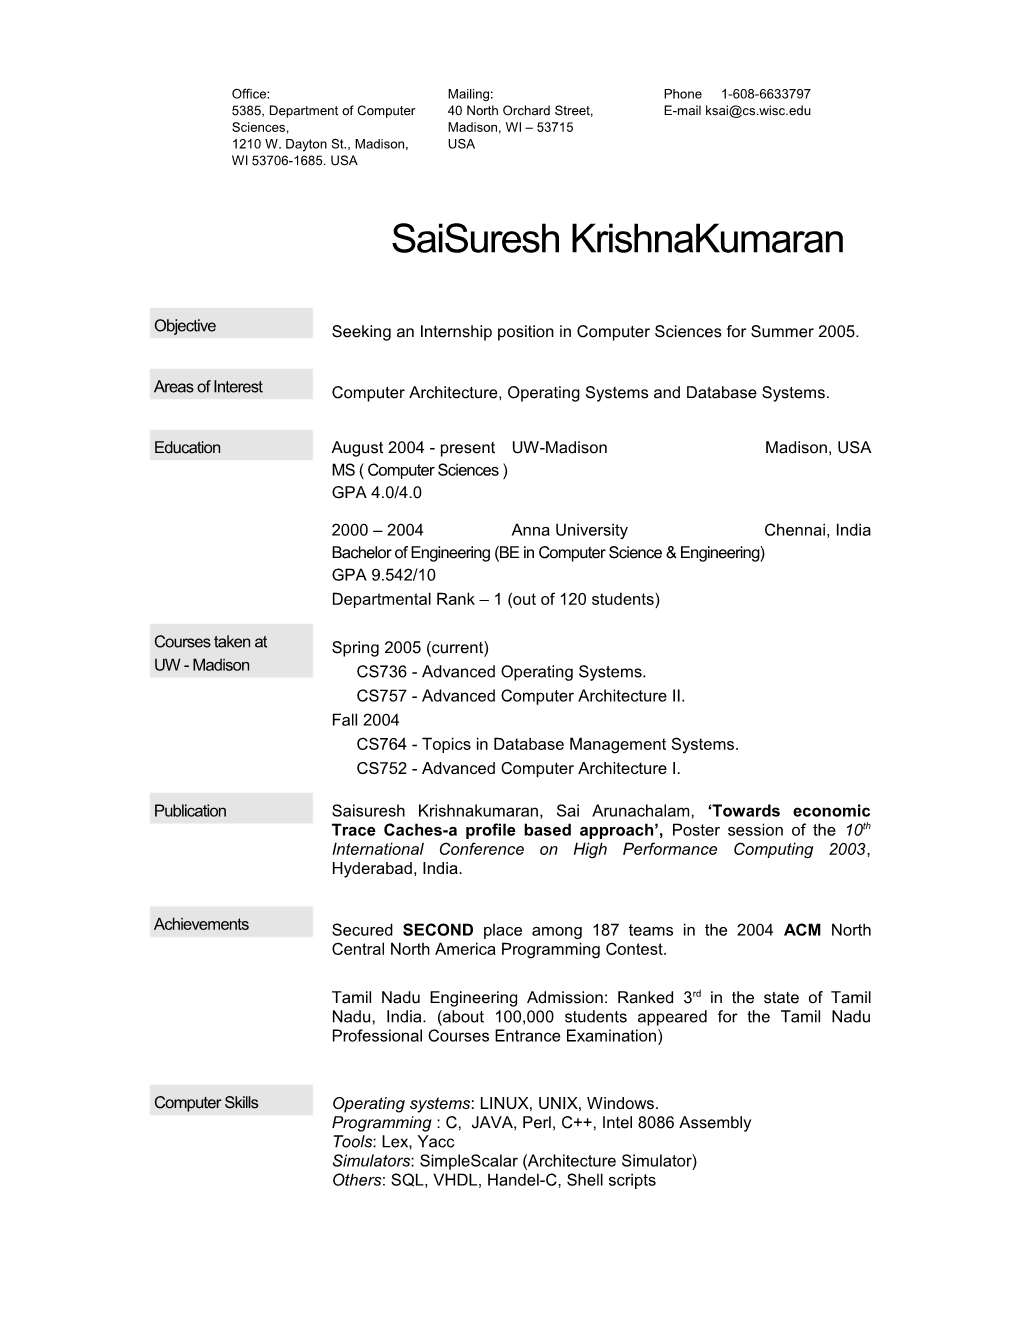 Saisuresh Krishnakumaran